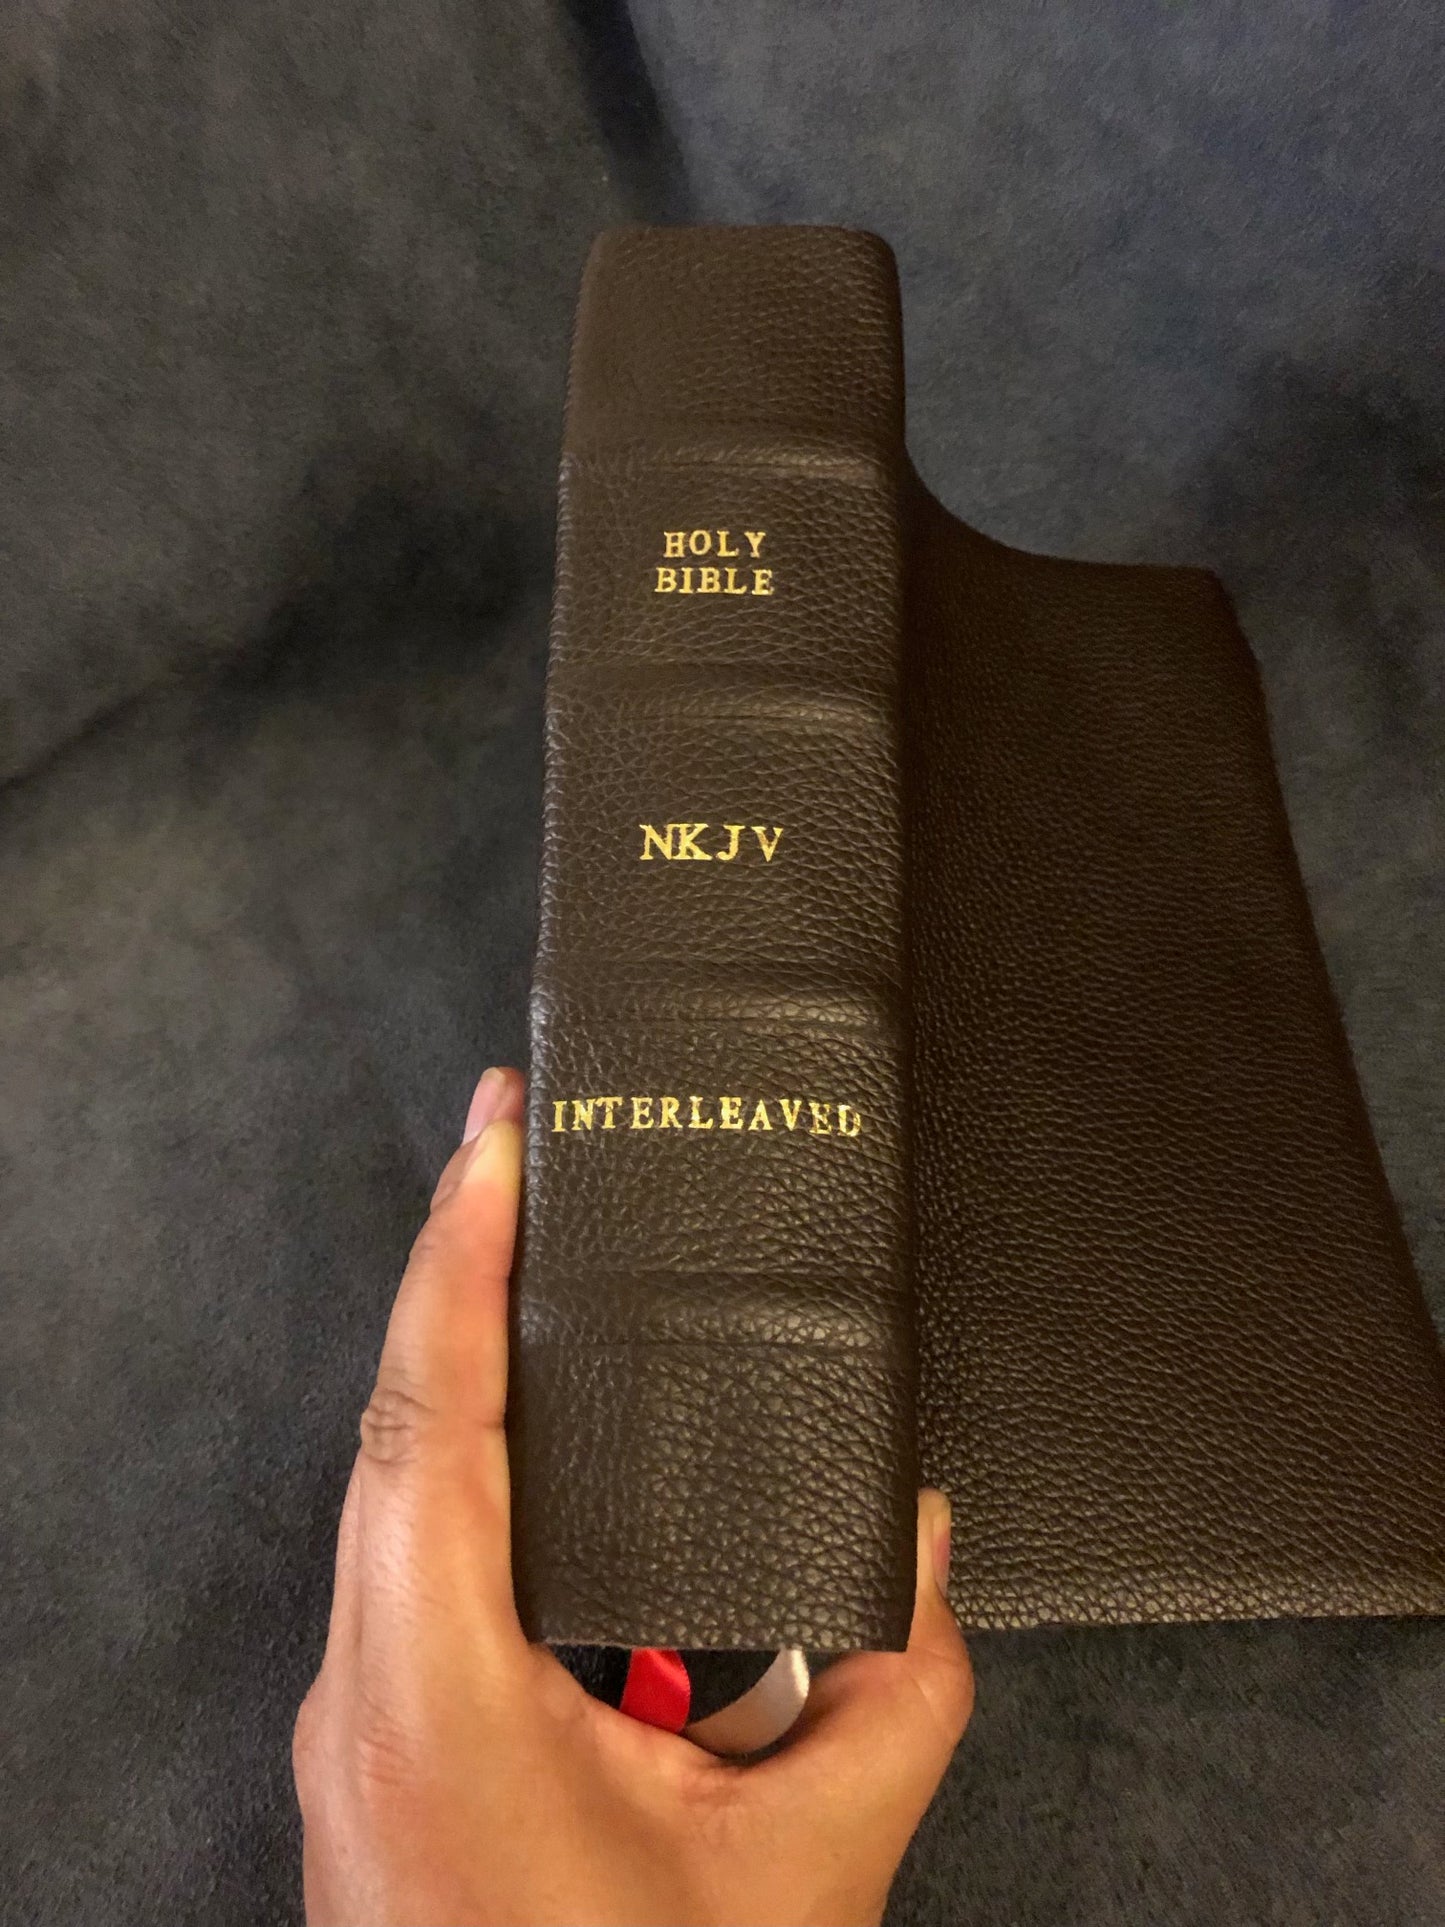 NKJV interleaved bible cowhide Leather No Markings.